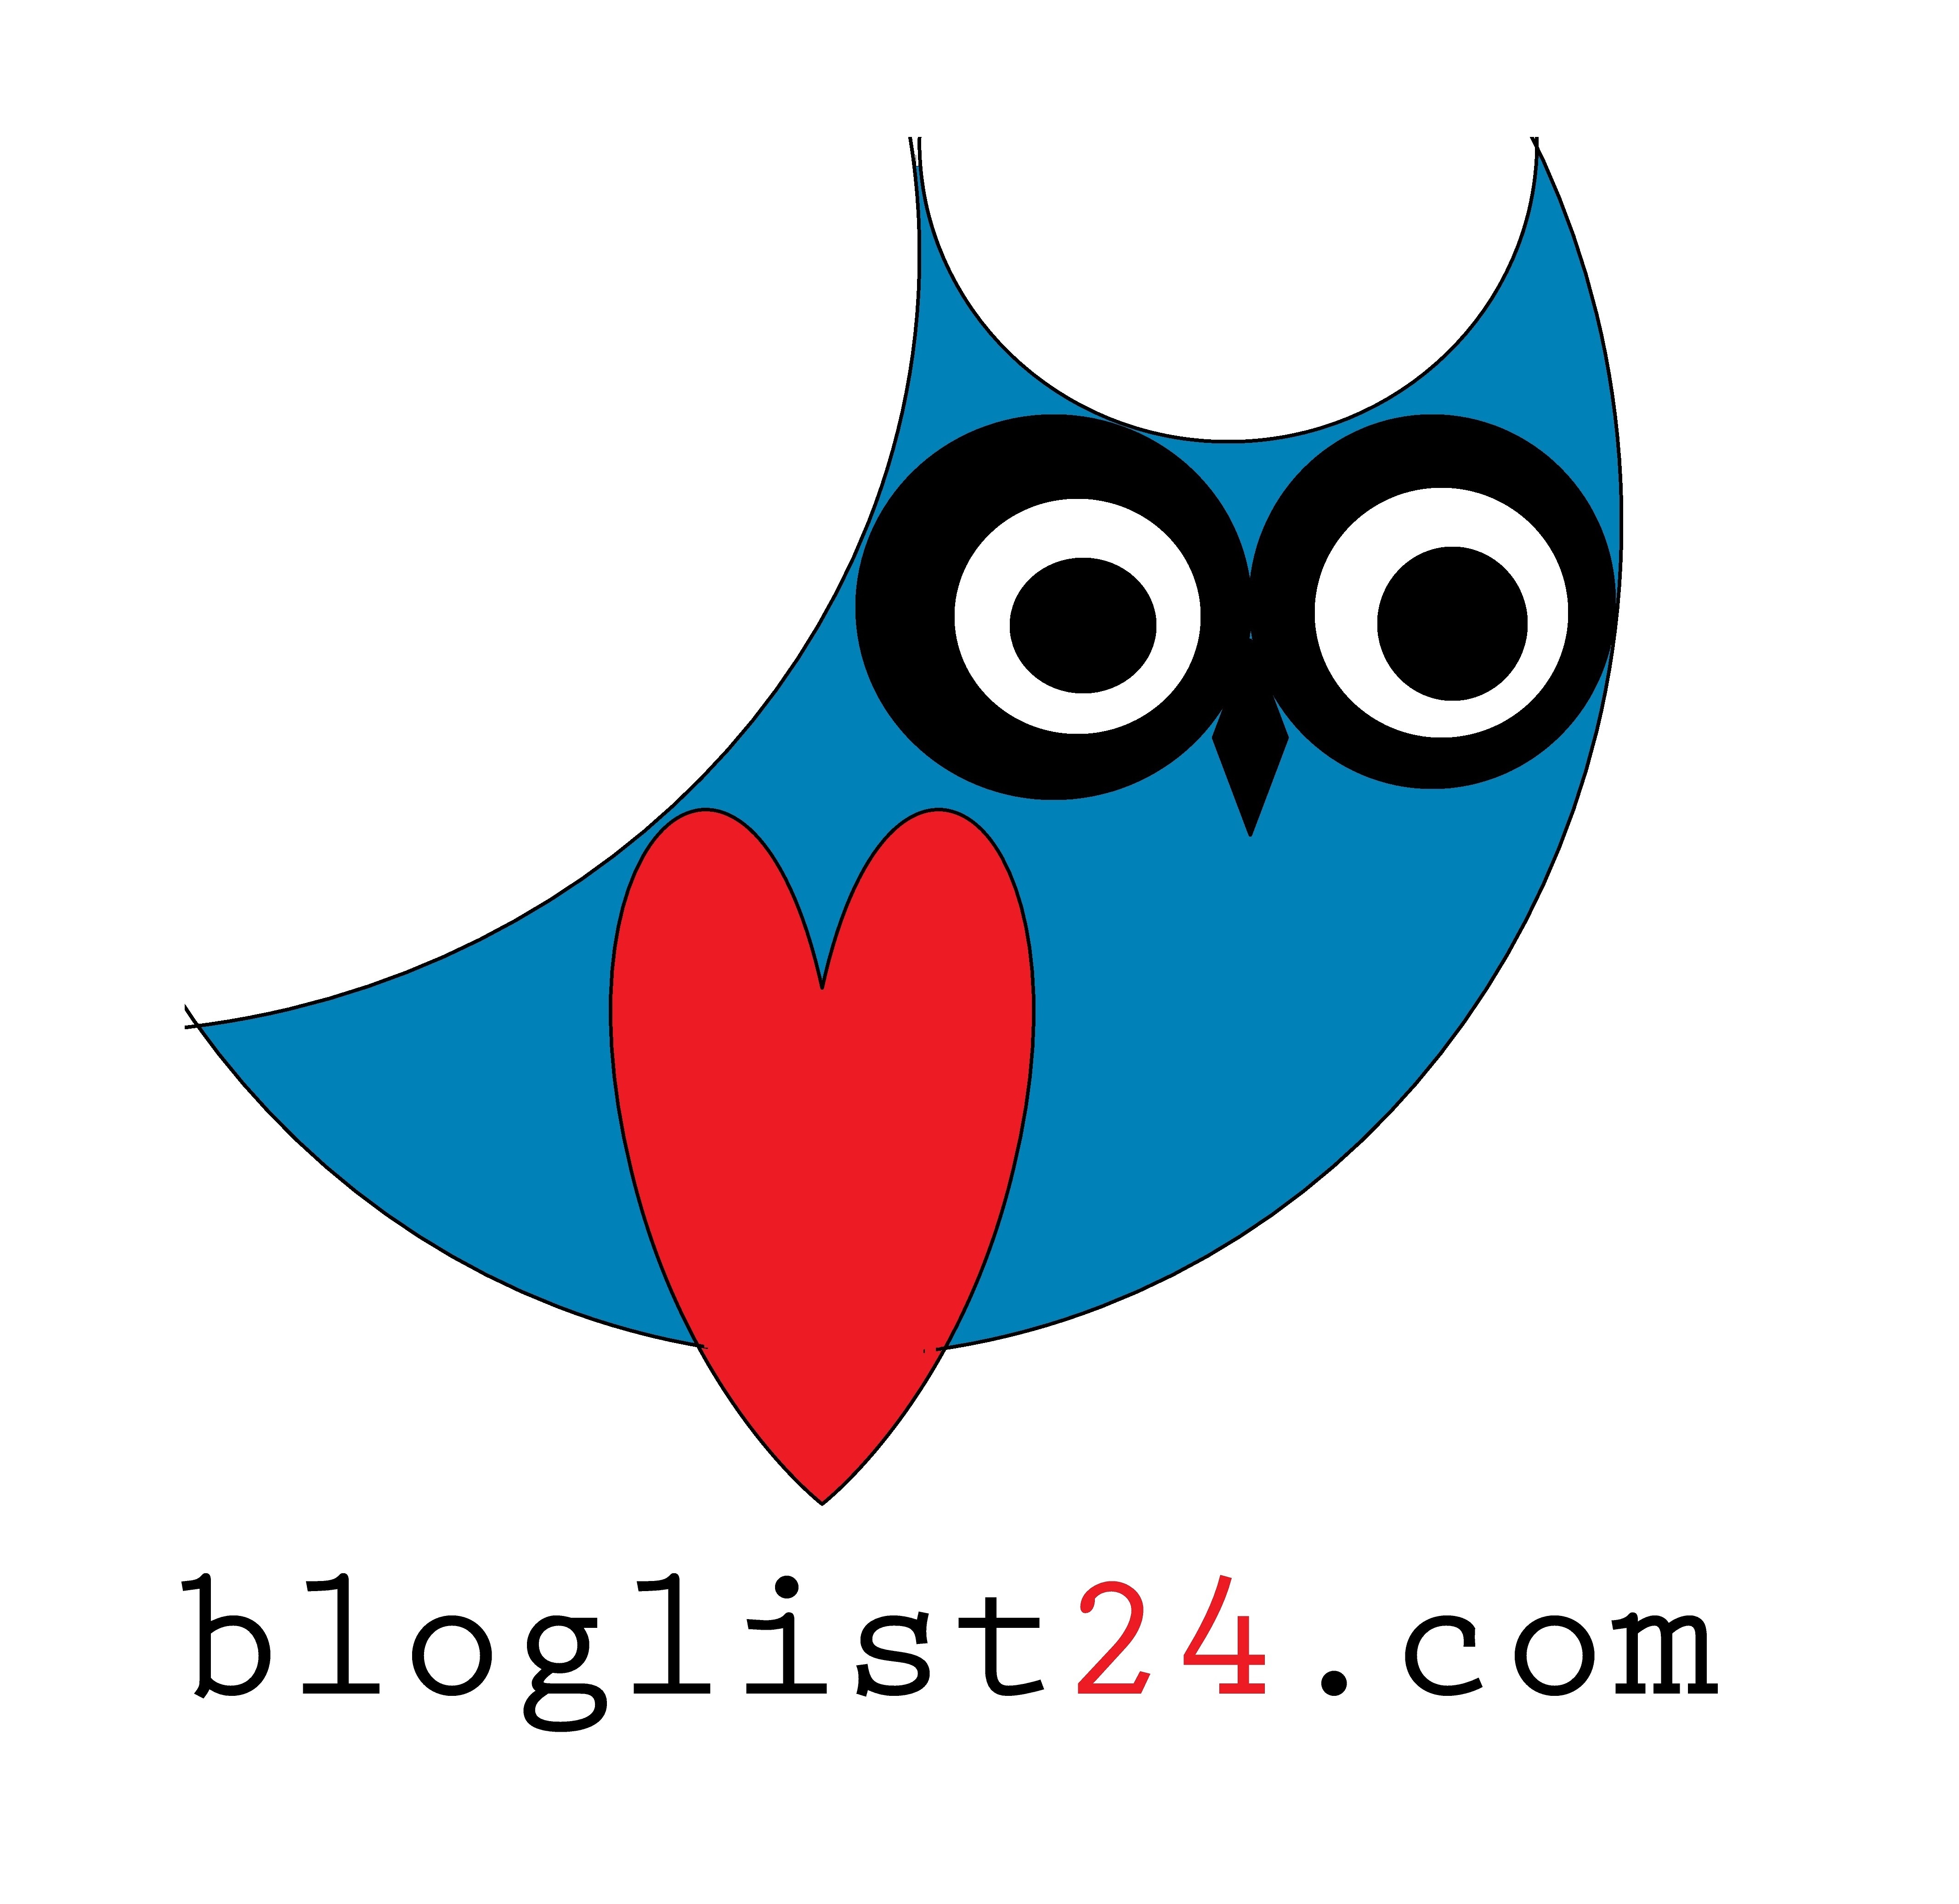 ”Bloglist24-com-”